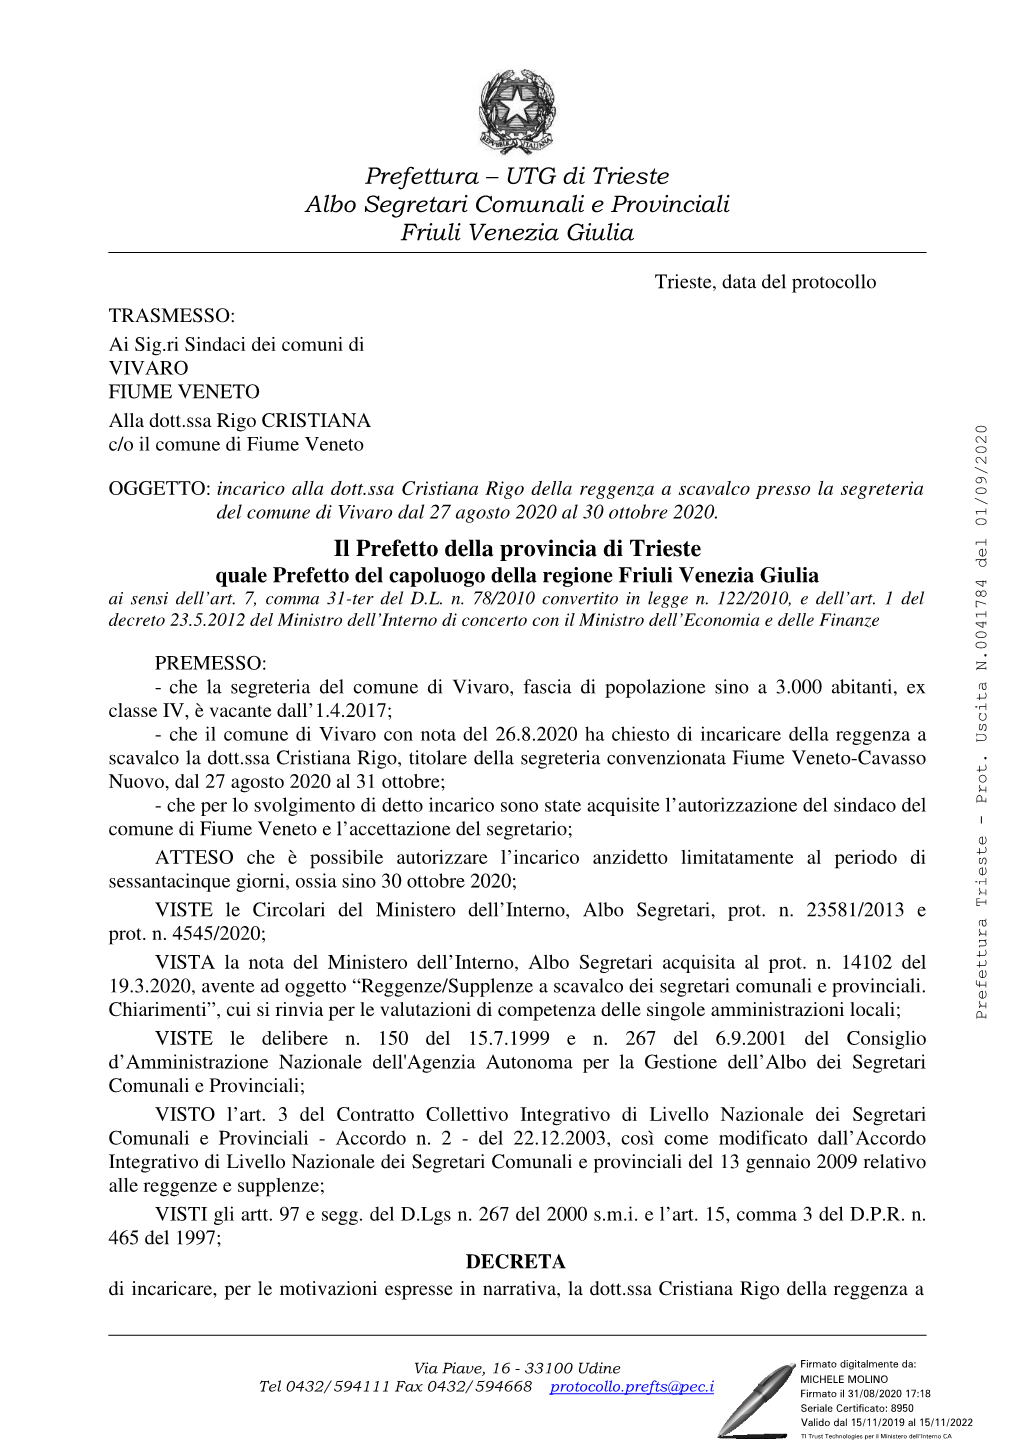 Il Prefetto Della Provincia Di Trieste Quale Prefetto Del Capoluogo Della Regione Friuli Venezia Giulia Ai Sensi Dell’Art